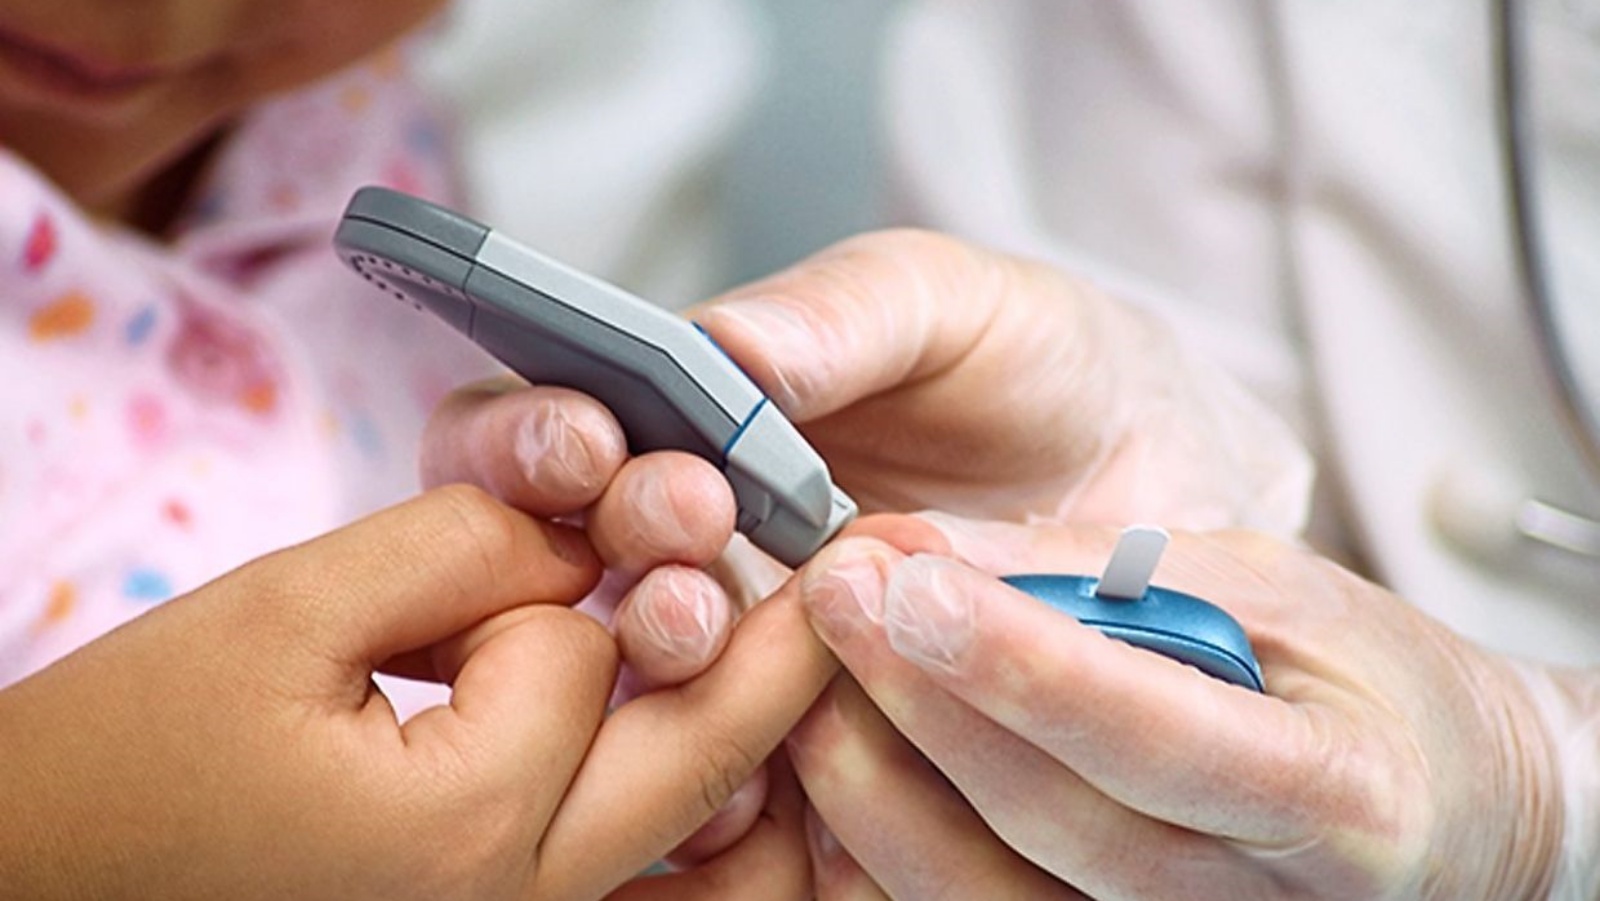 كل ما يتطلبه الأمر هو وخز إصبع صغير لاختبار مستوى السكر في دم طفلك